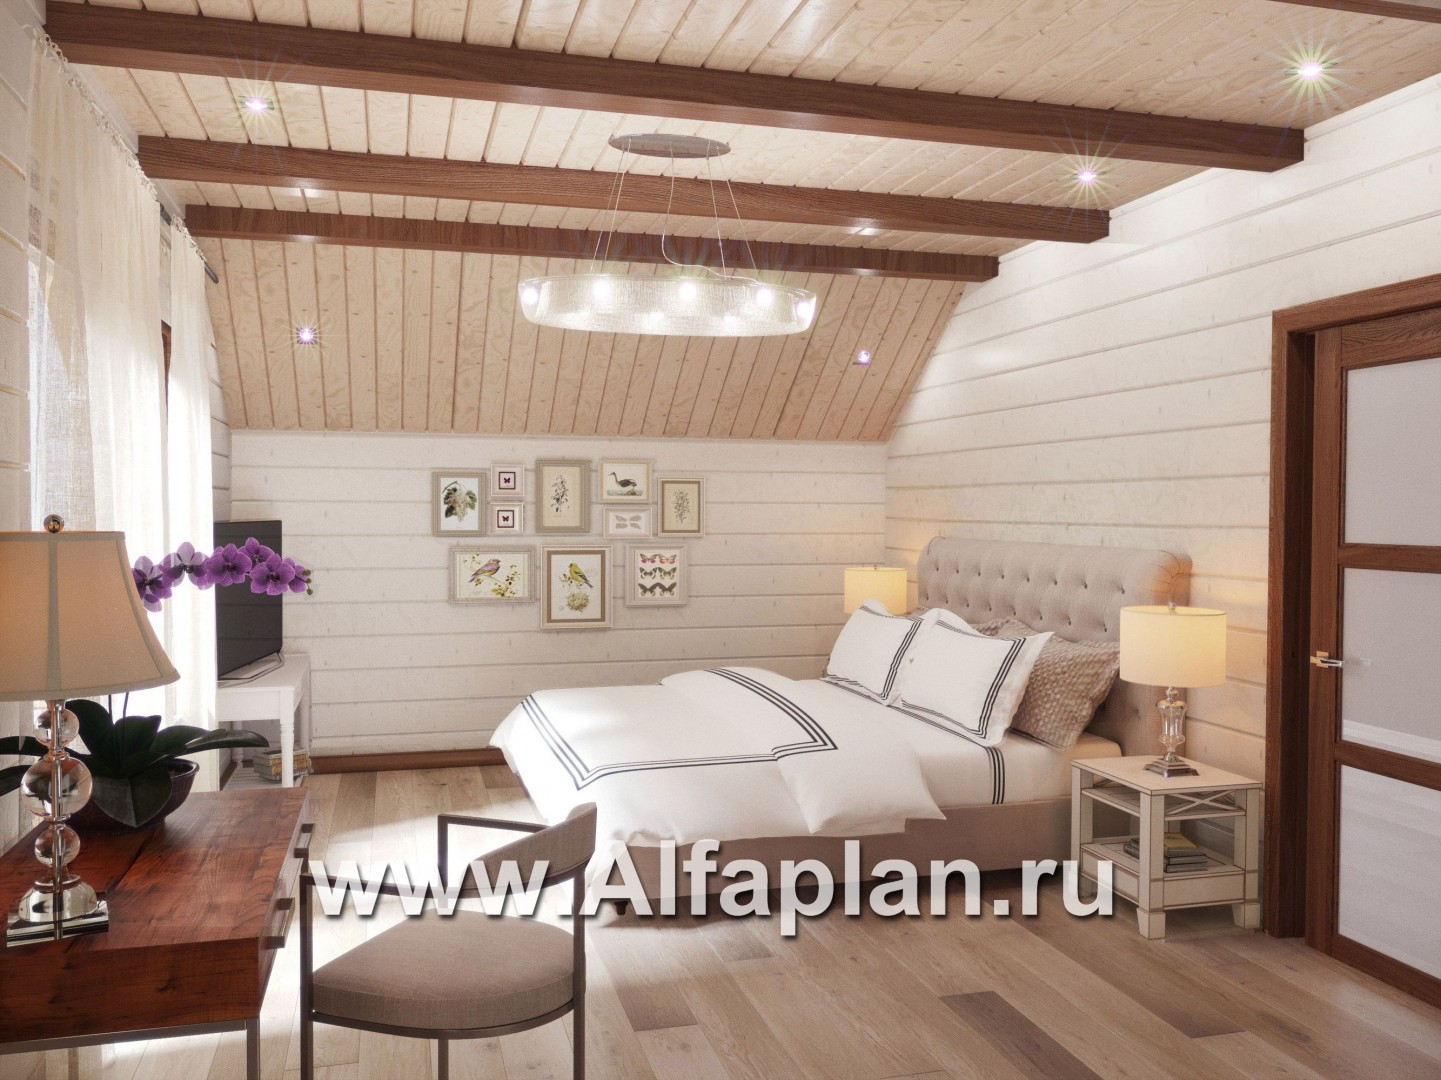 Проекты домов Альфаплан - Проект деревянного дома для большой семьи - дополнительное изображение №4